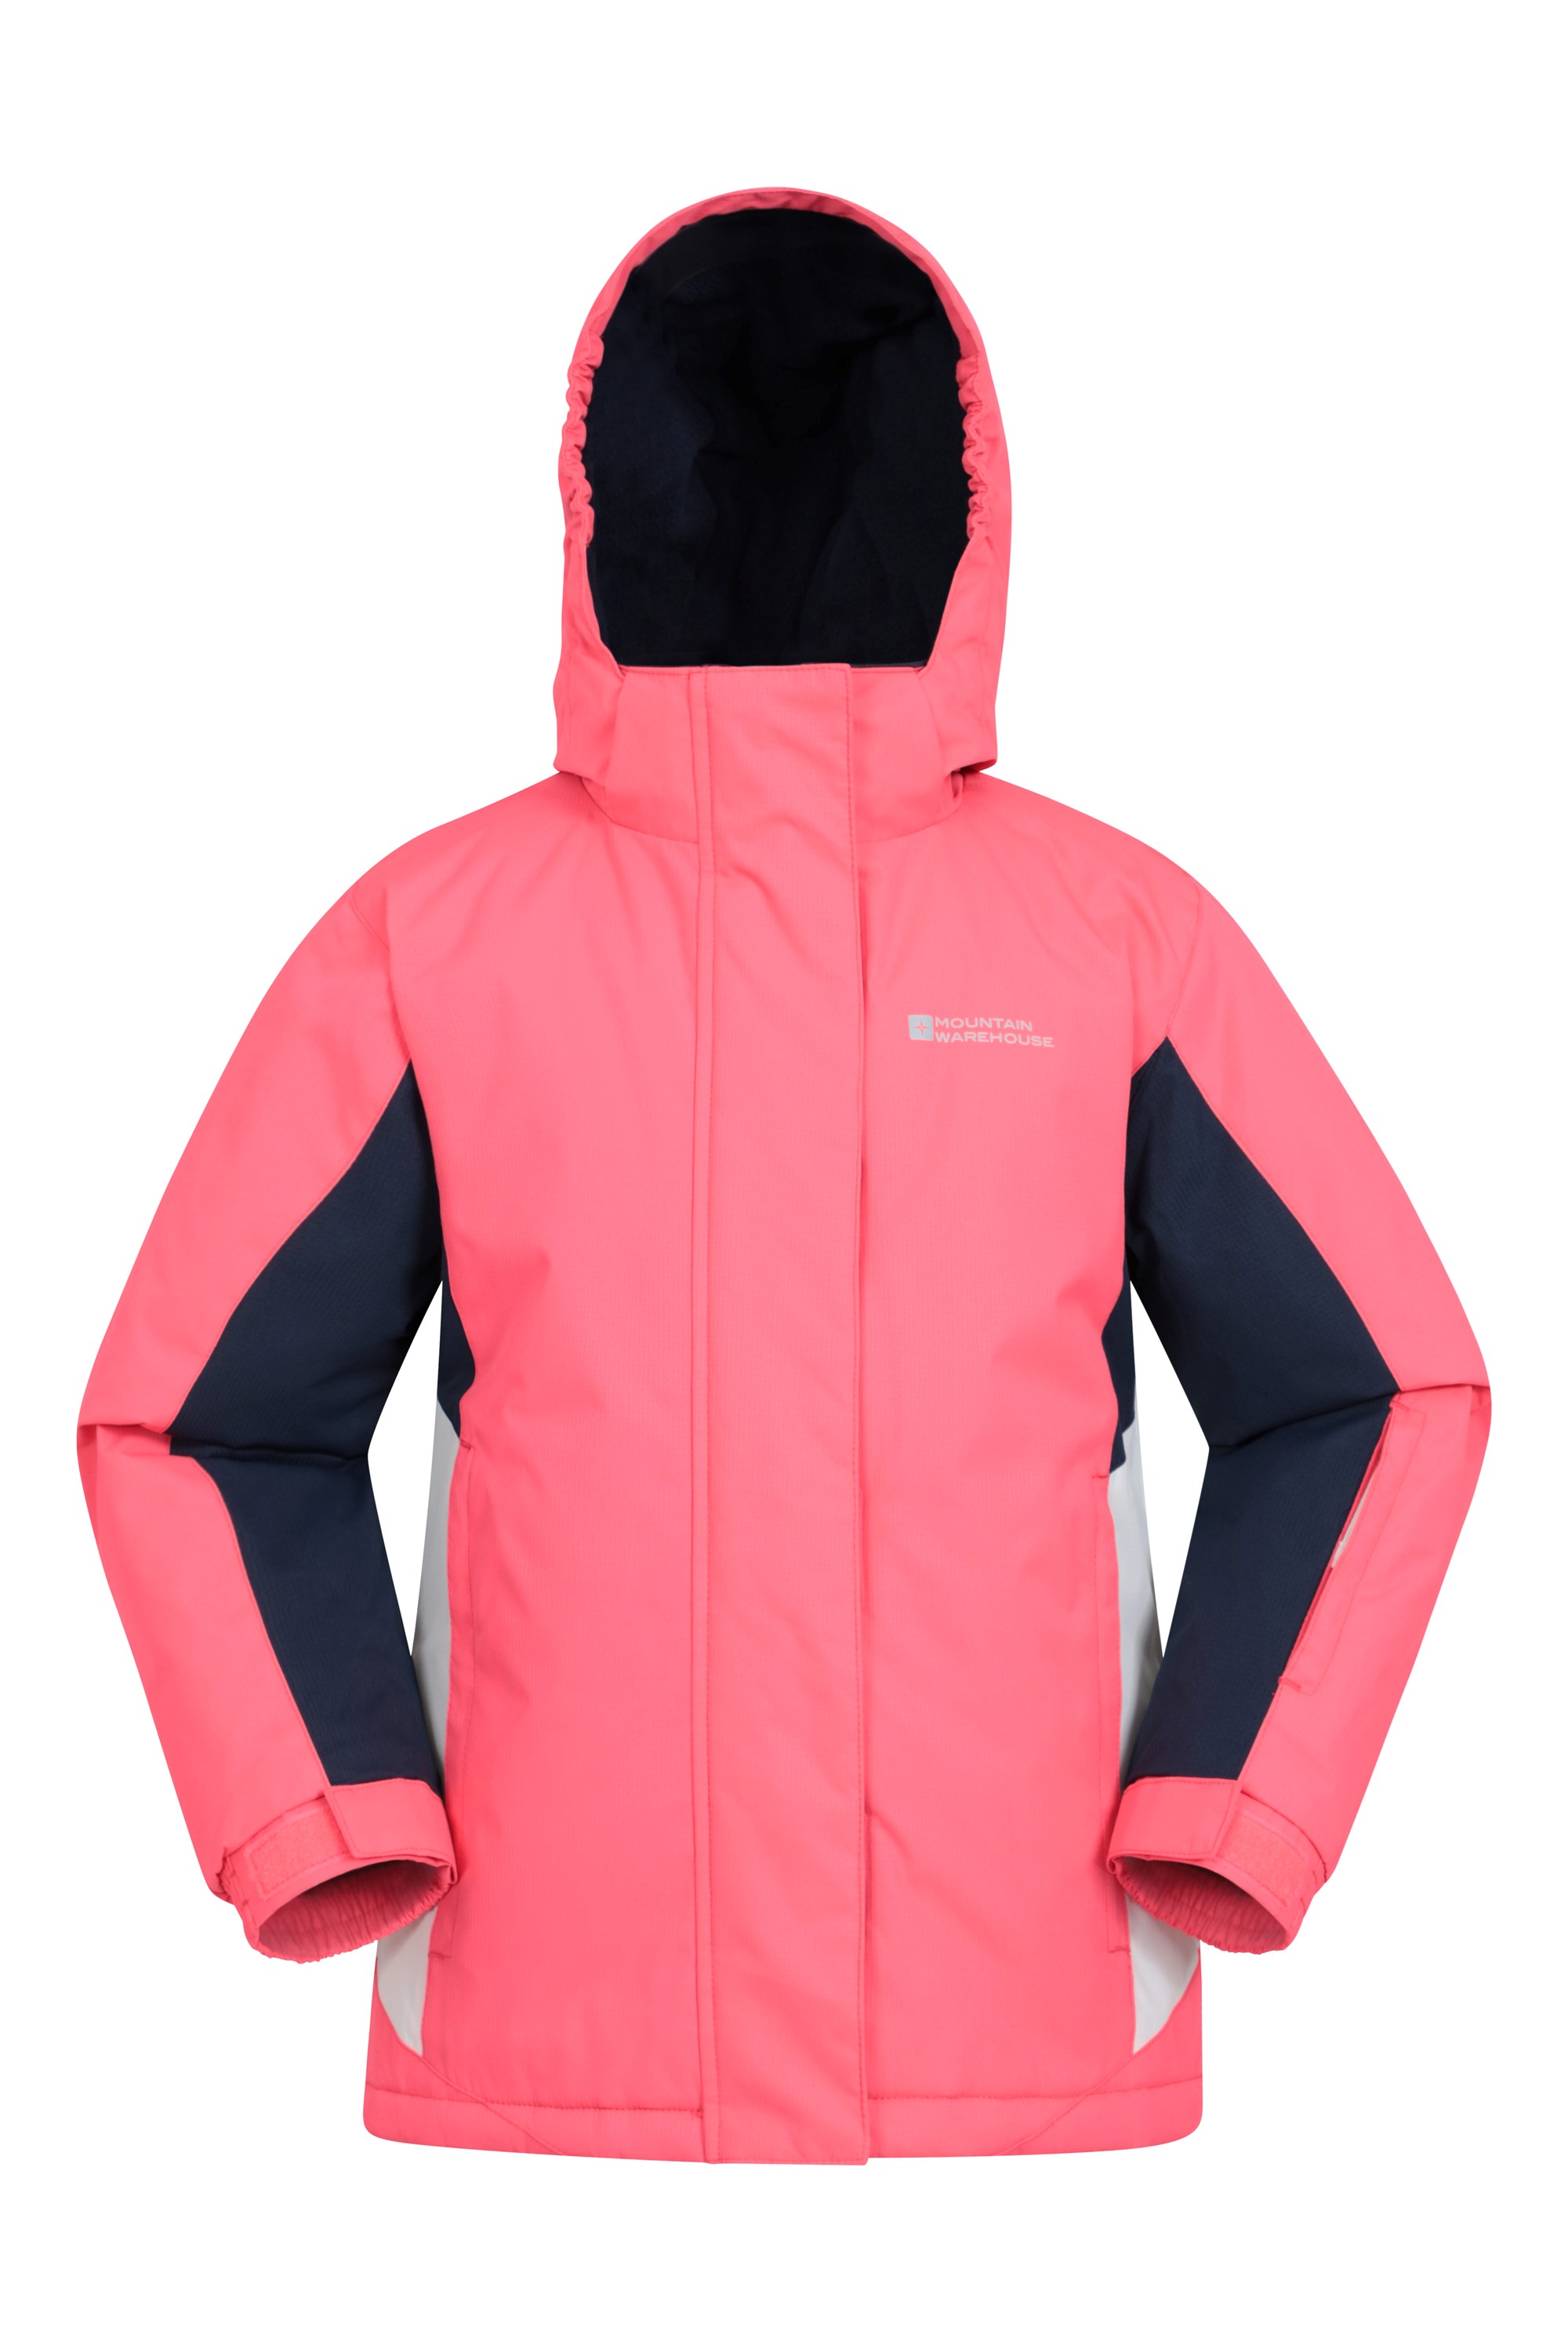 Mountain Warehouse Kids Waterproof Winter Ski Jacket Fleece Lined 